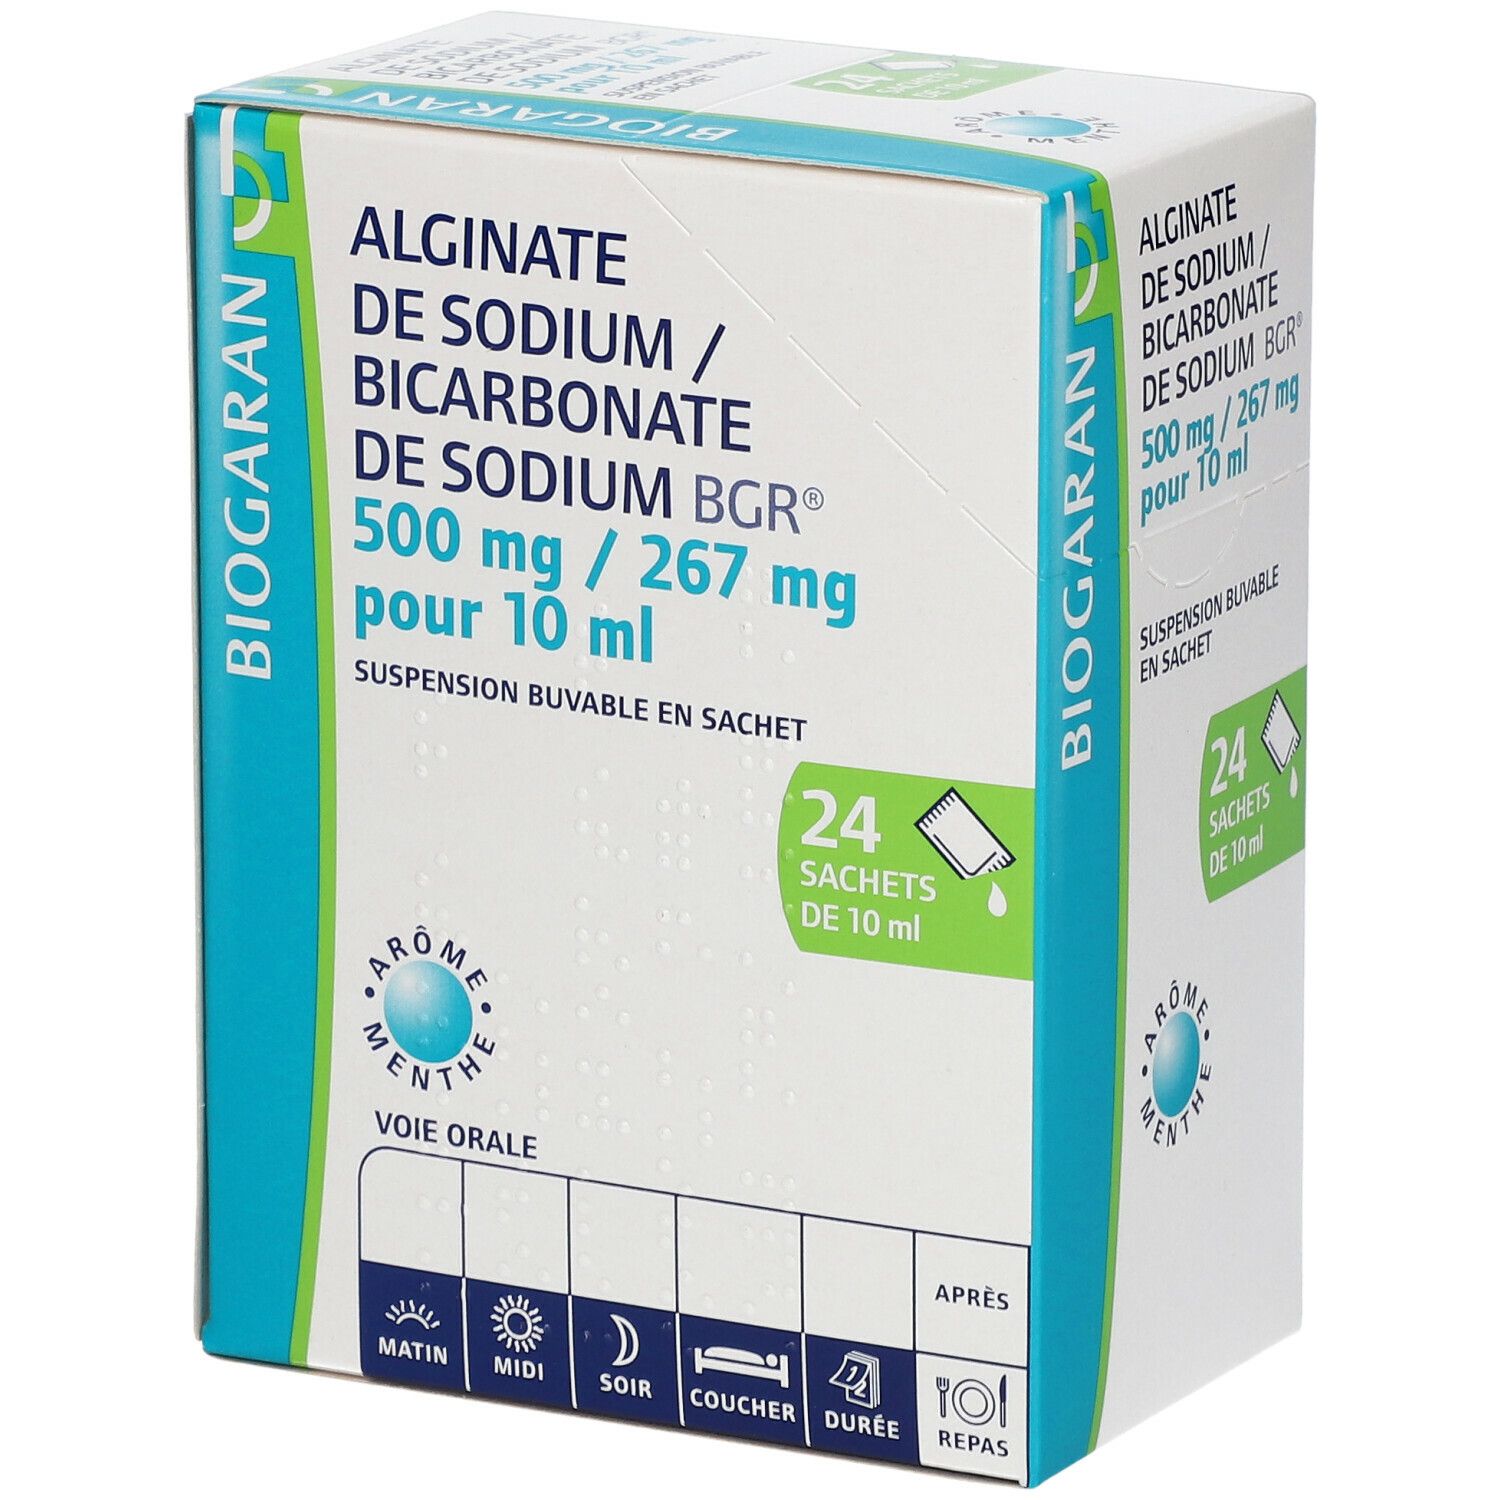 Biogran Alginate de sodium/Bicarbonate de sodium Bgr®